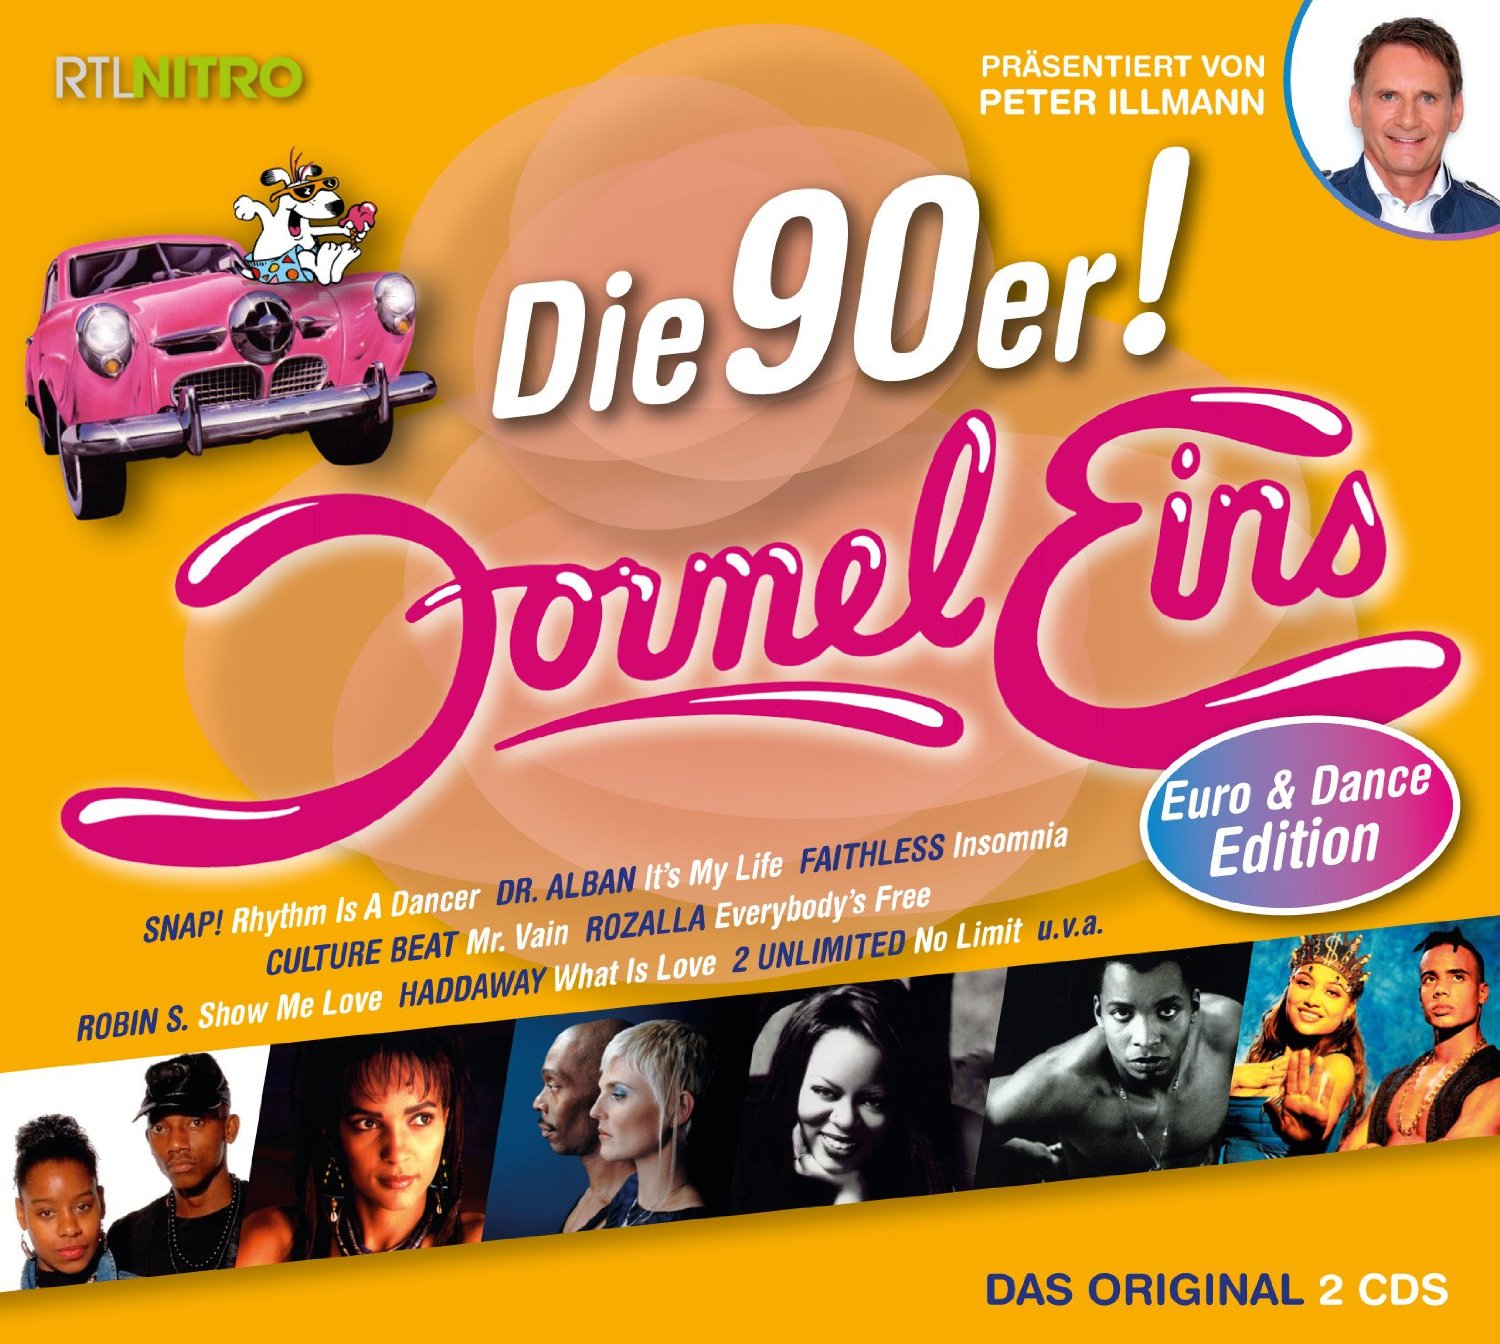 VA - Formel Eins Die 90er (Euro Dance Edition) (2CD) (WEB) (2015)